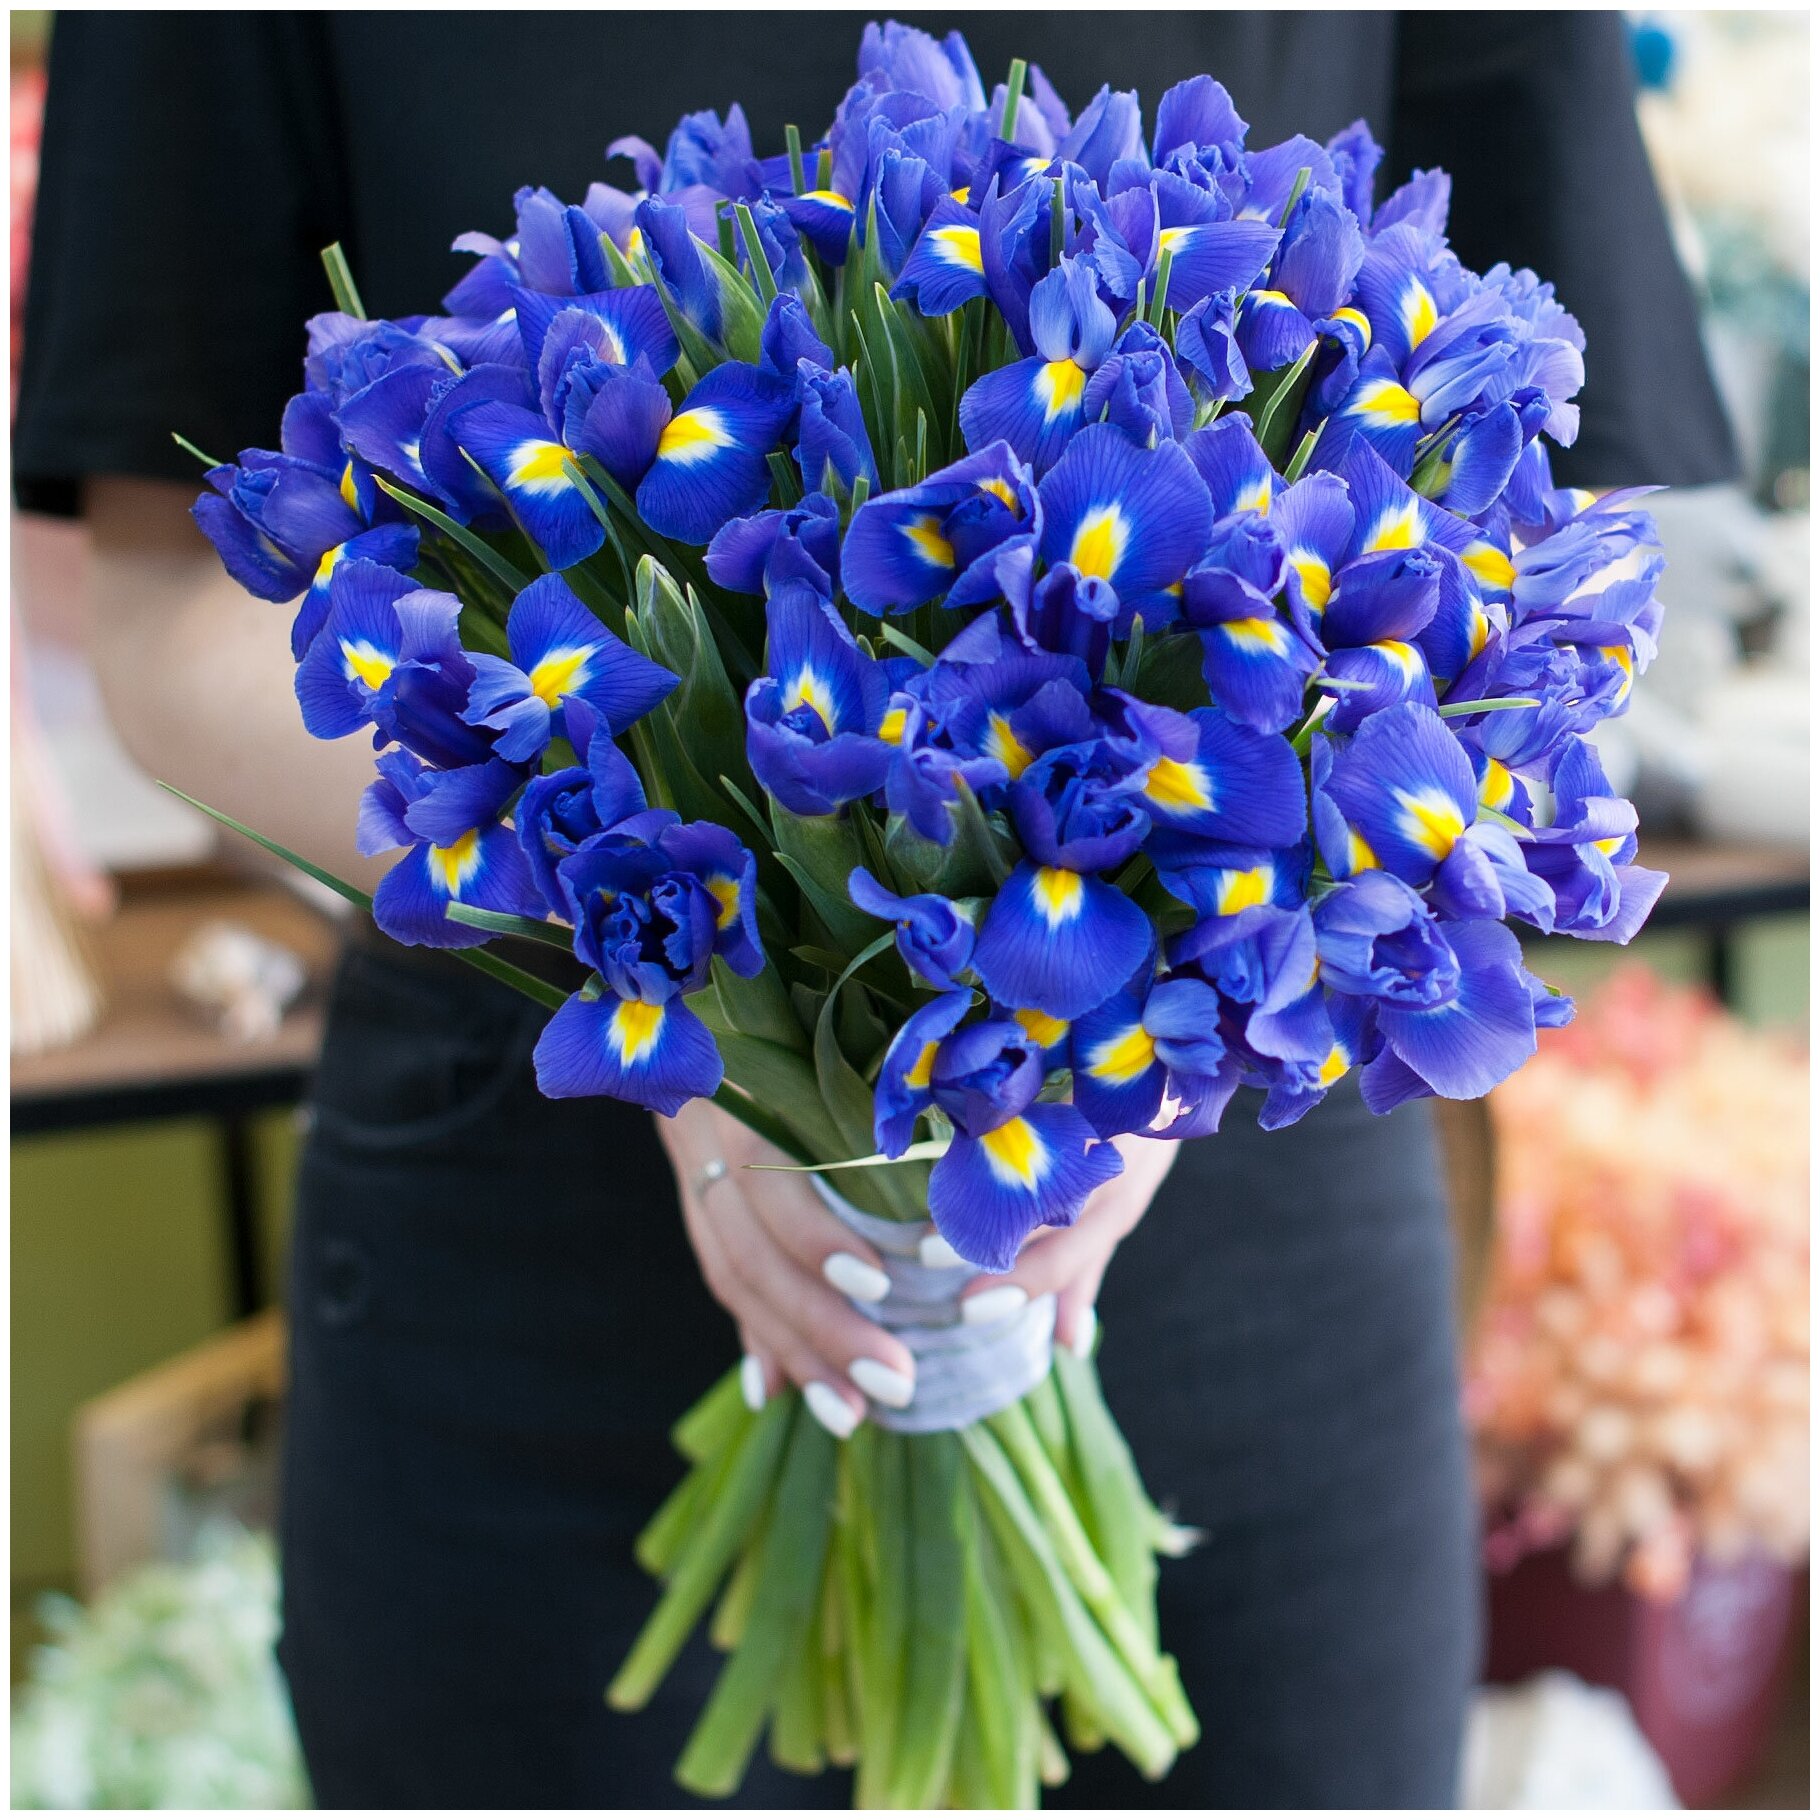 Купить цветы в интернет магазине ирисы цветы доставка срочно спб